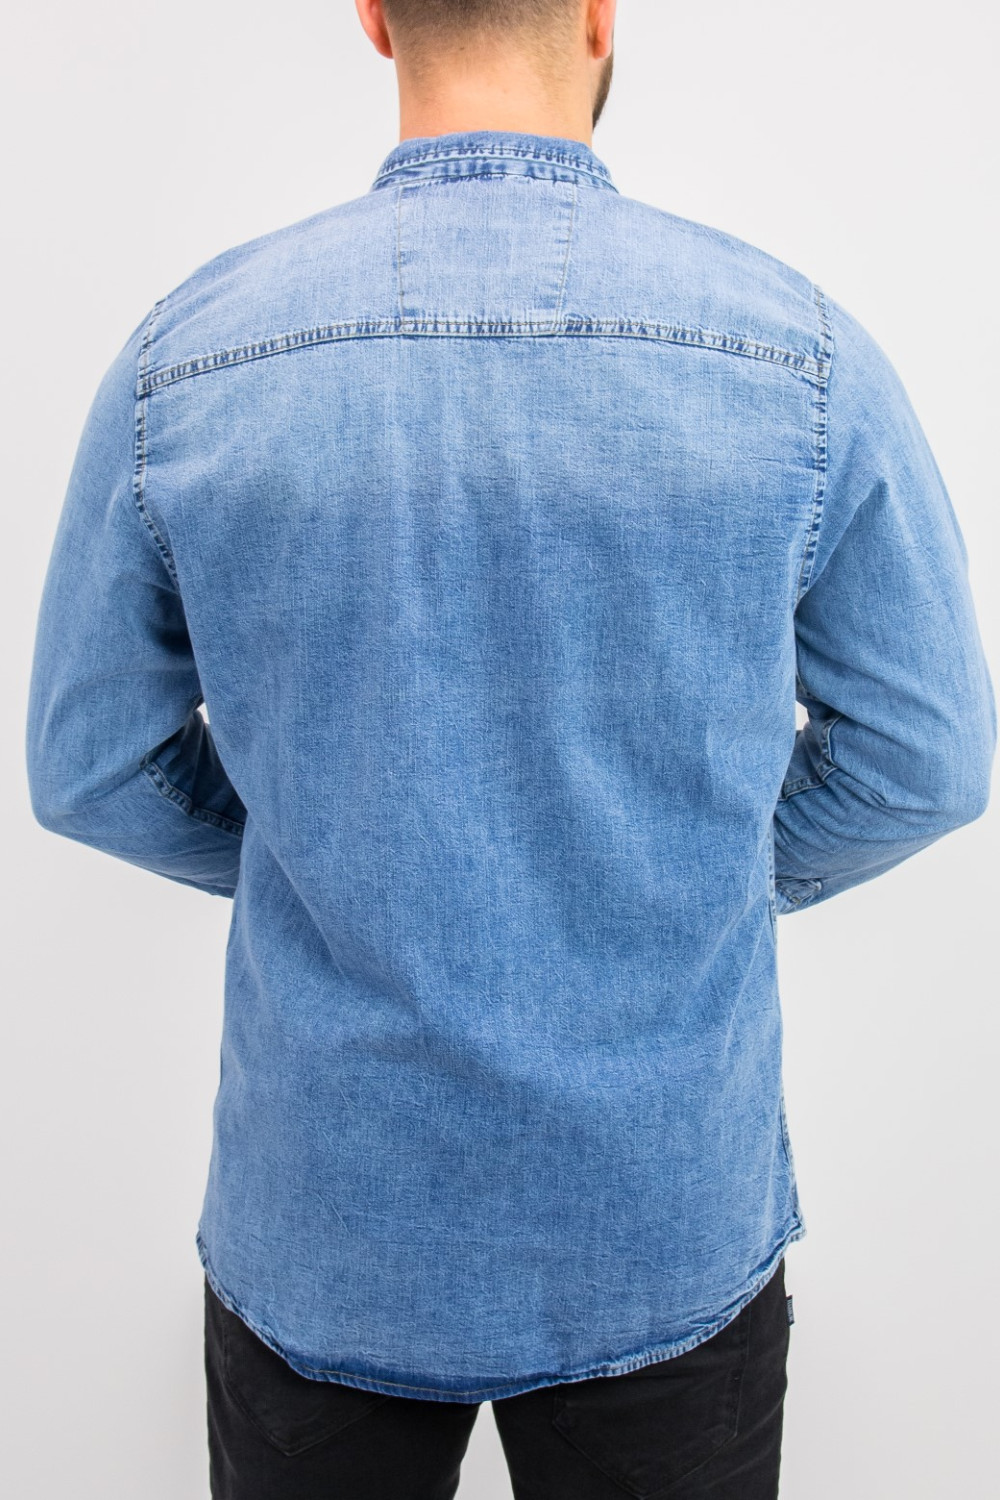 Ανδρικό μπλε χλώριο τζιν πουκάμισο με κουμπιά 18276